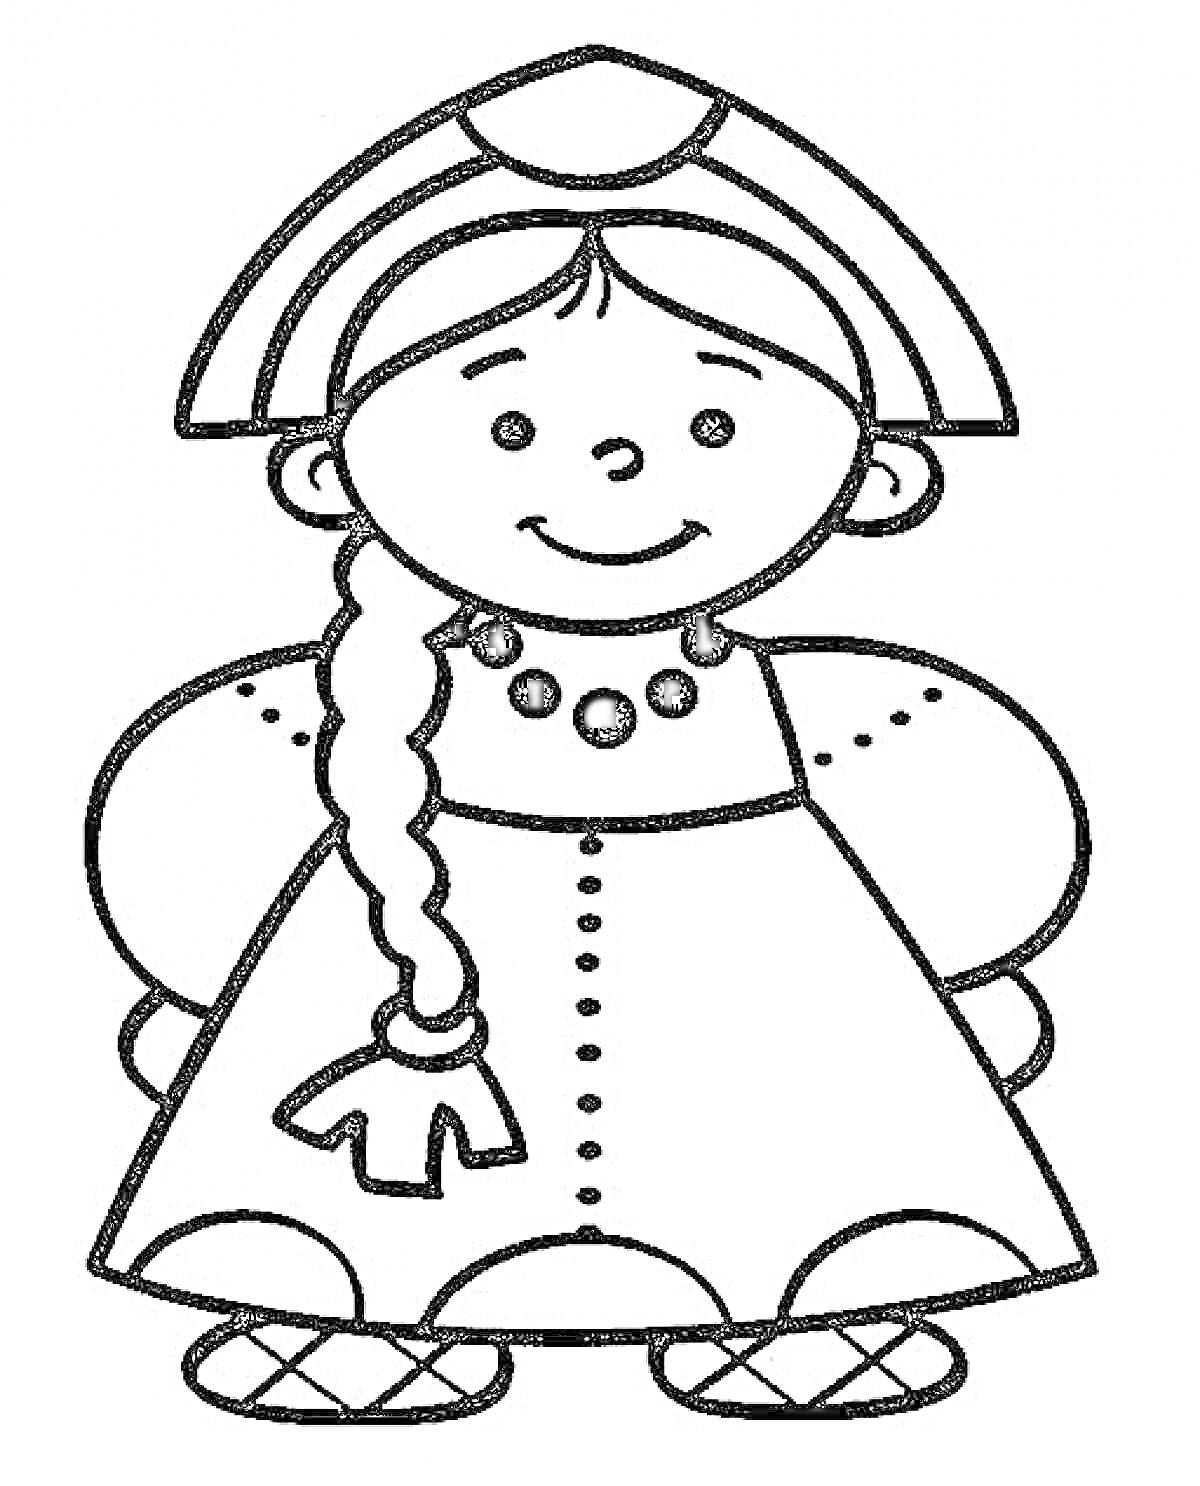 Девочка в русском народном костюме с традиционной кокошником, косичкой, бусы, сарафан с пуговицами, рукава-фонарики, лапти